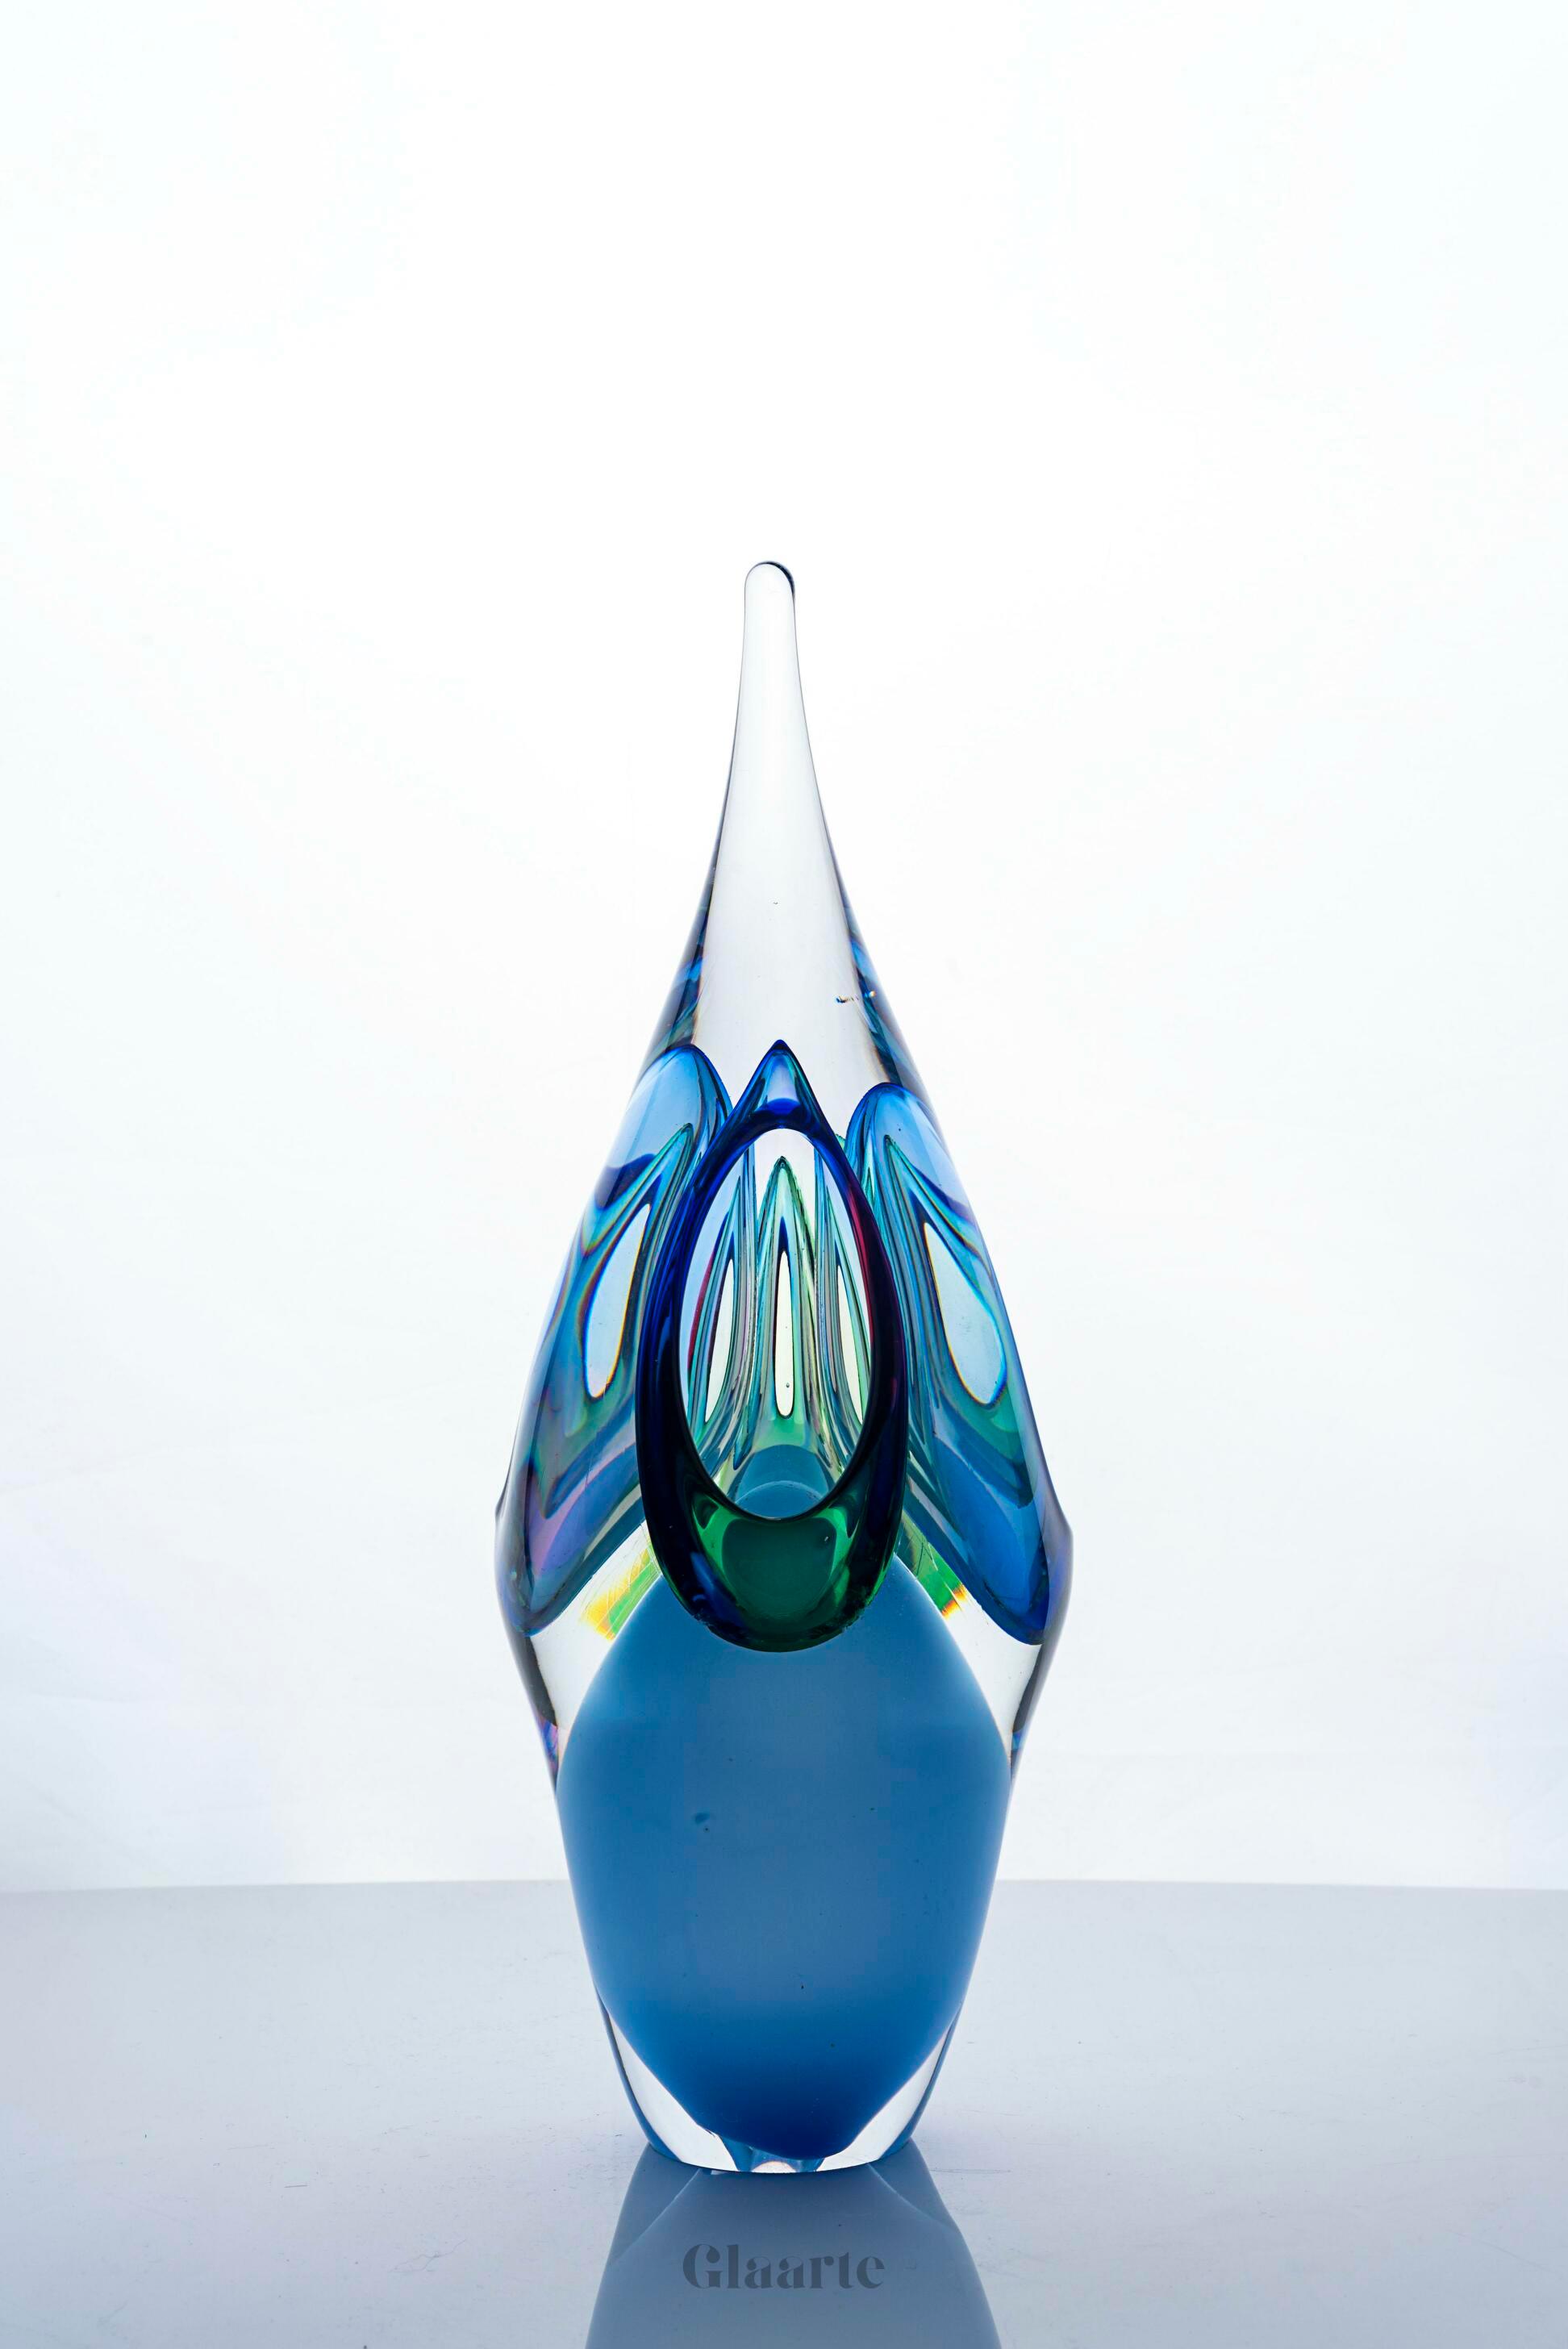 Kryształowa rzeźba szklana dekoracyjna Portal de Cristal - Glaarte